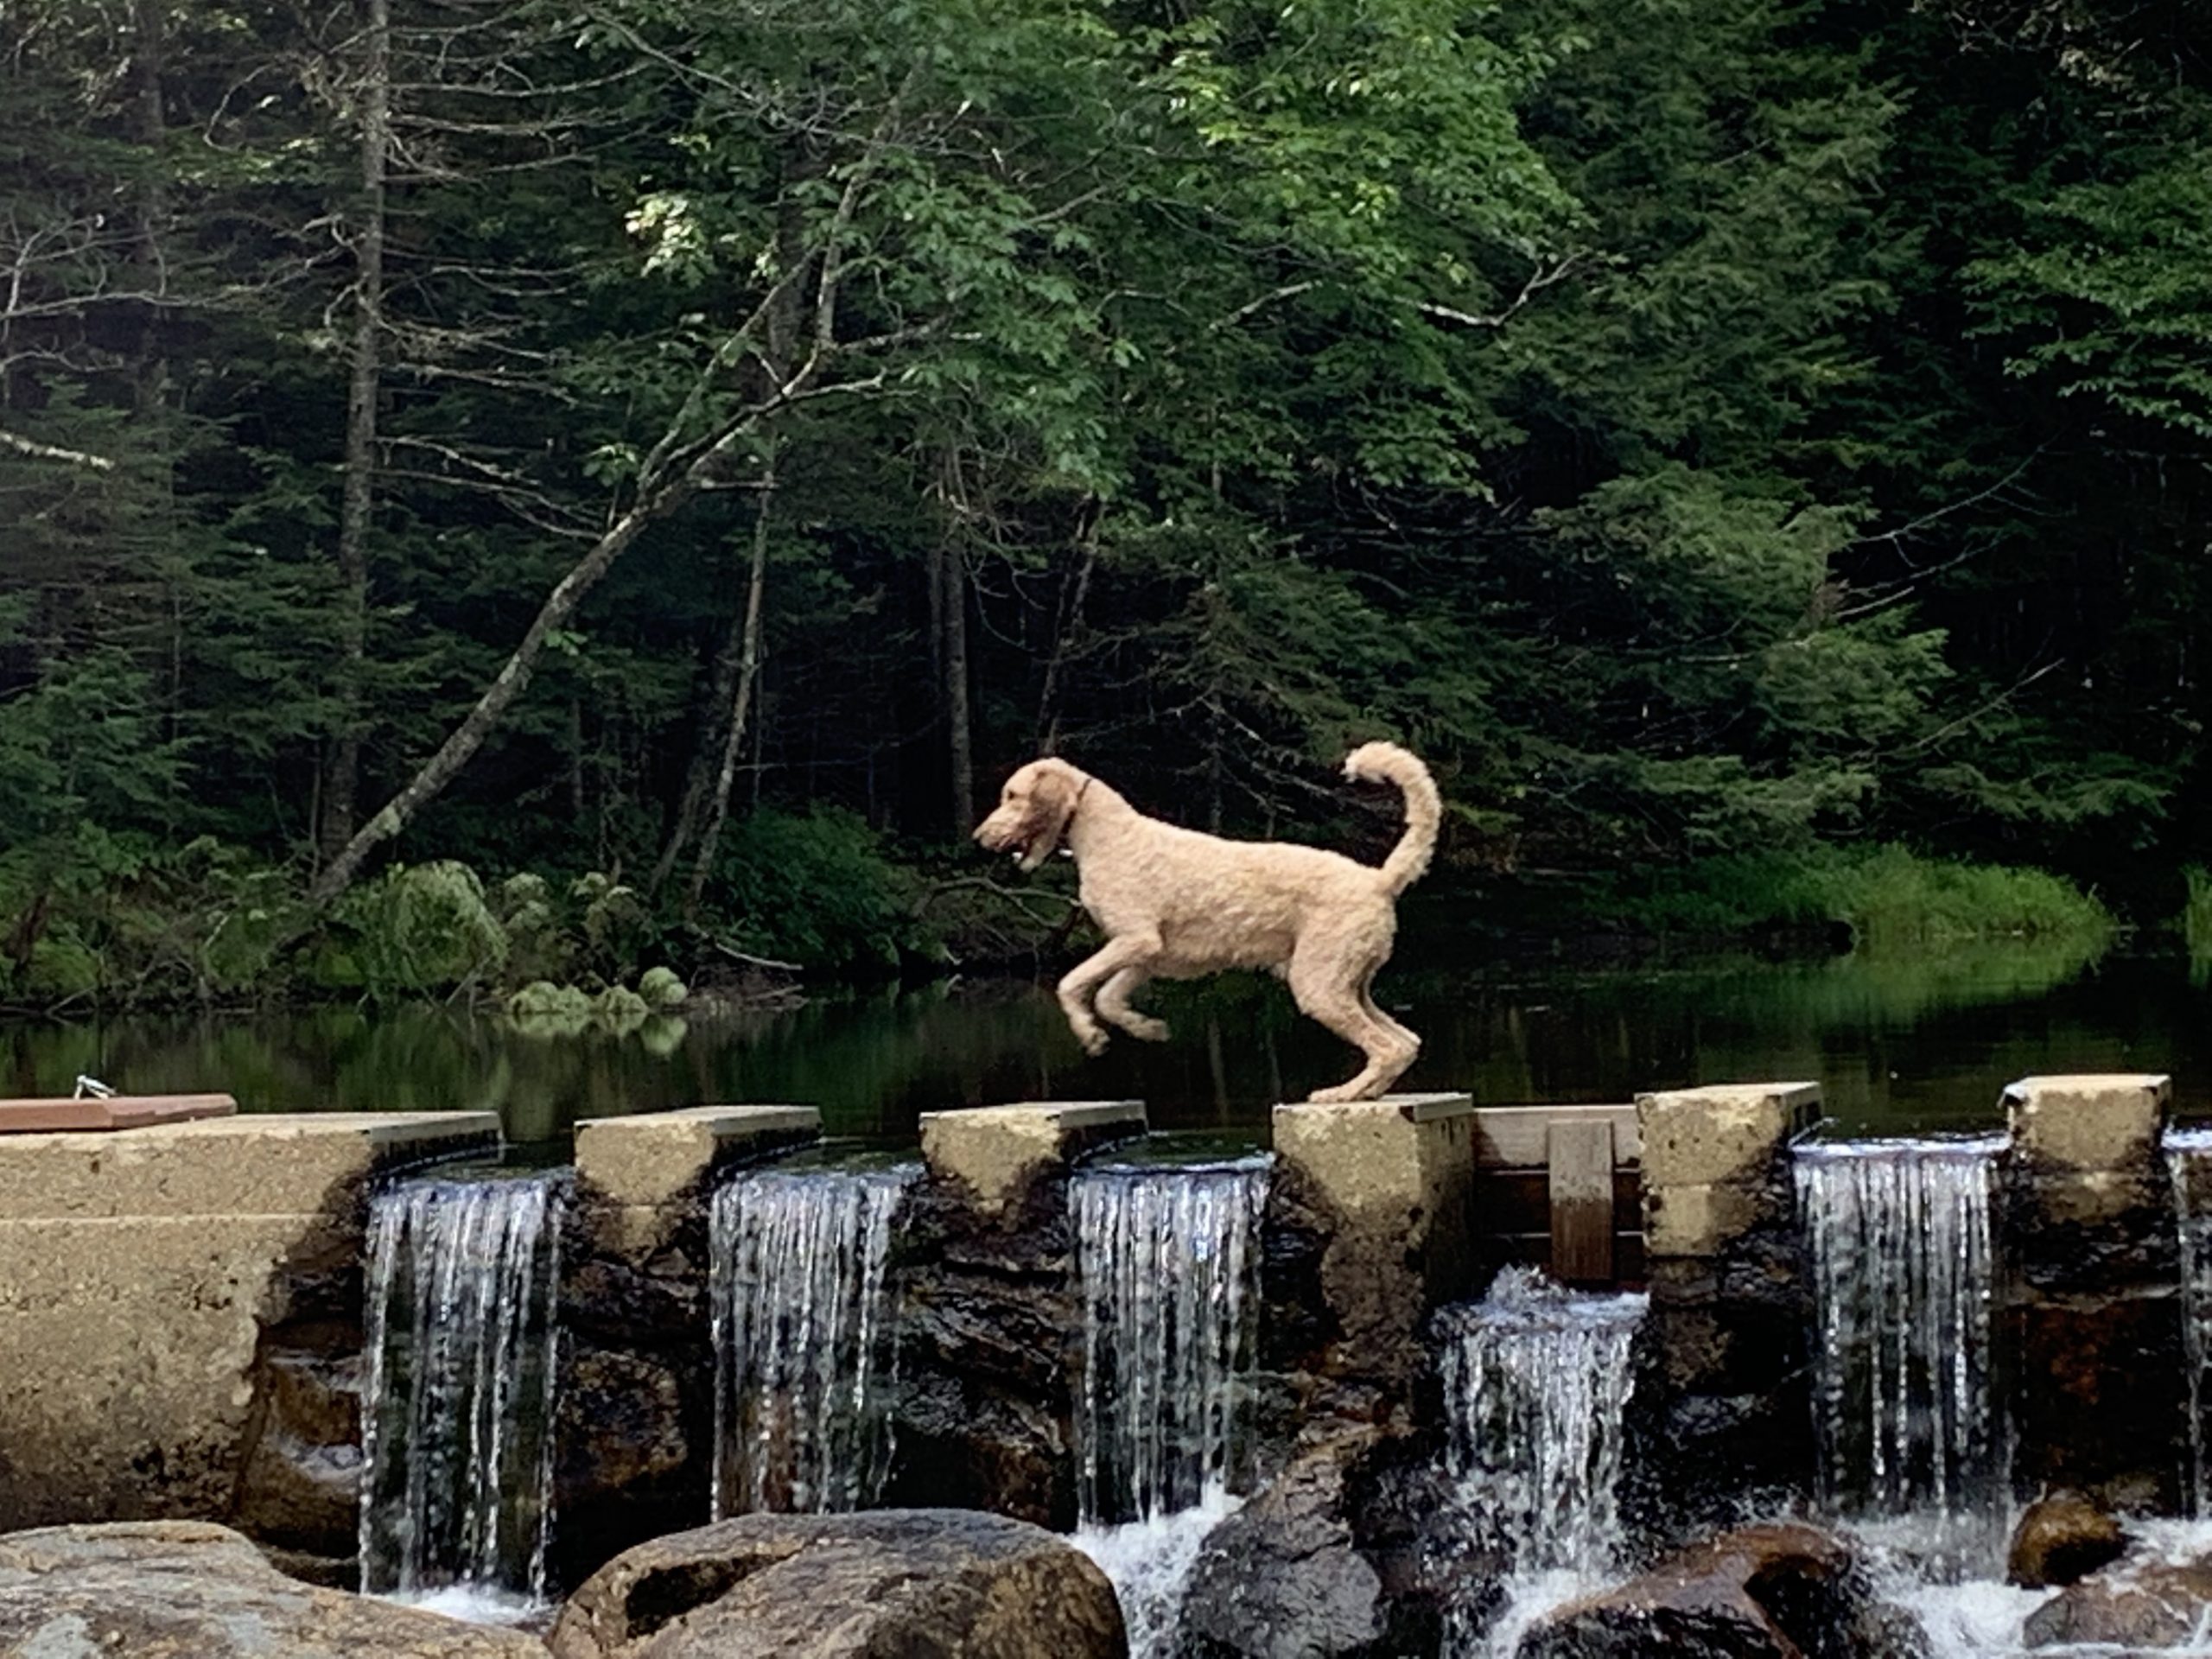 Baxter jumping on the damn at Little Deer Hill